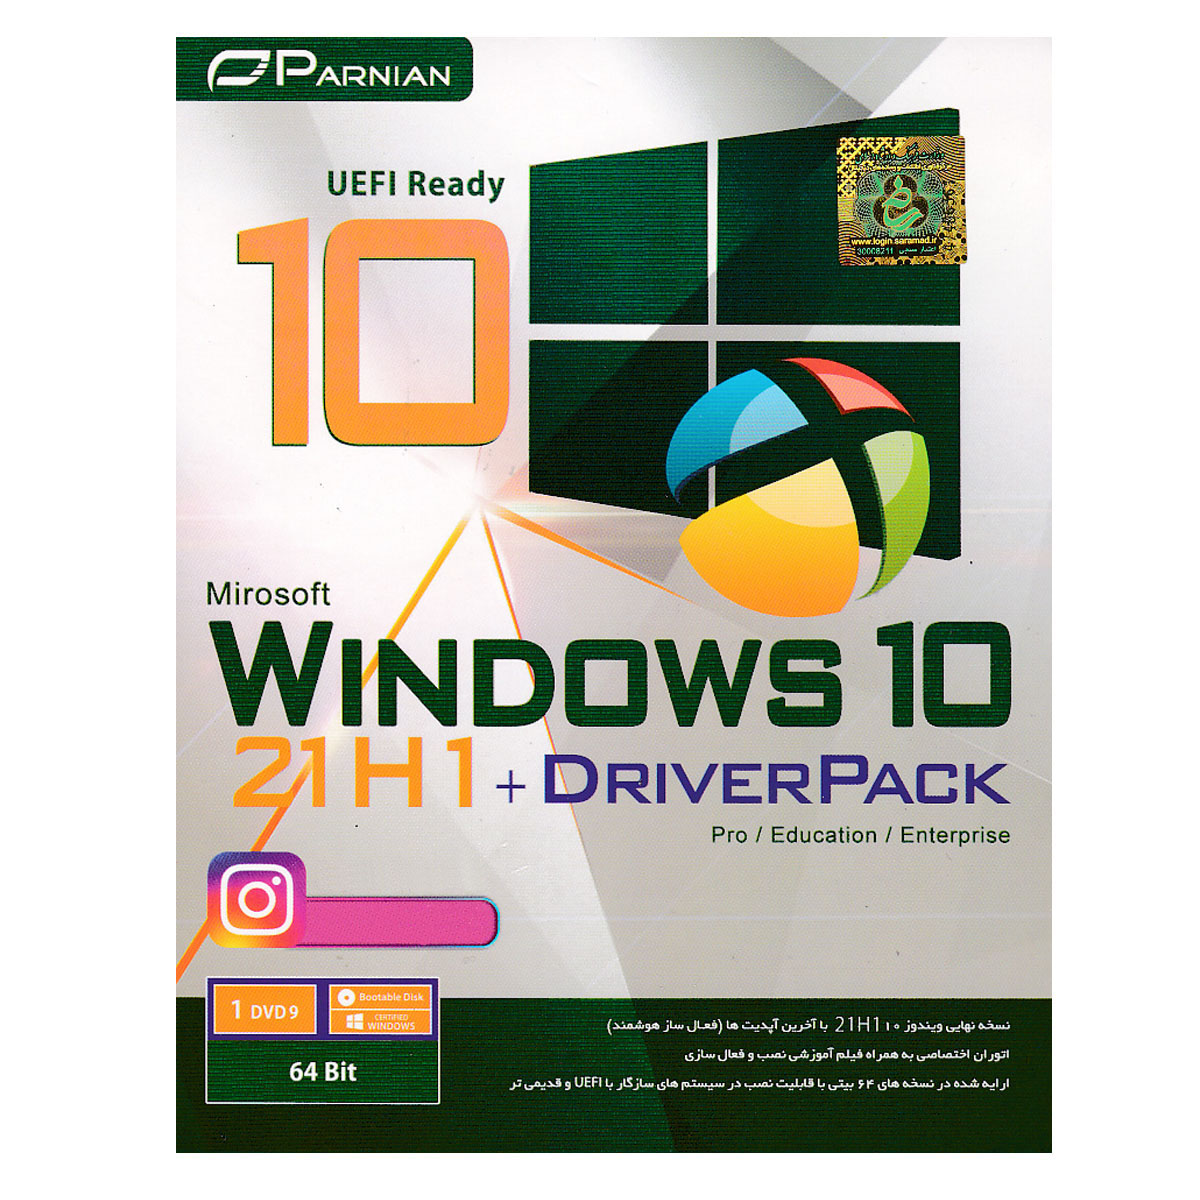 سیستم عامل Windows 10 21H1 + Driver Pack نشر پرنیان